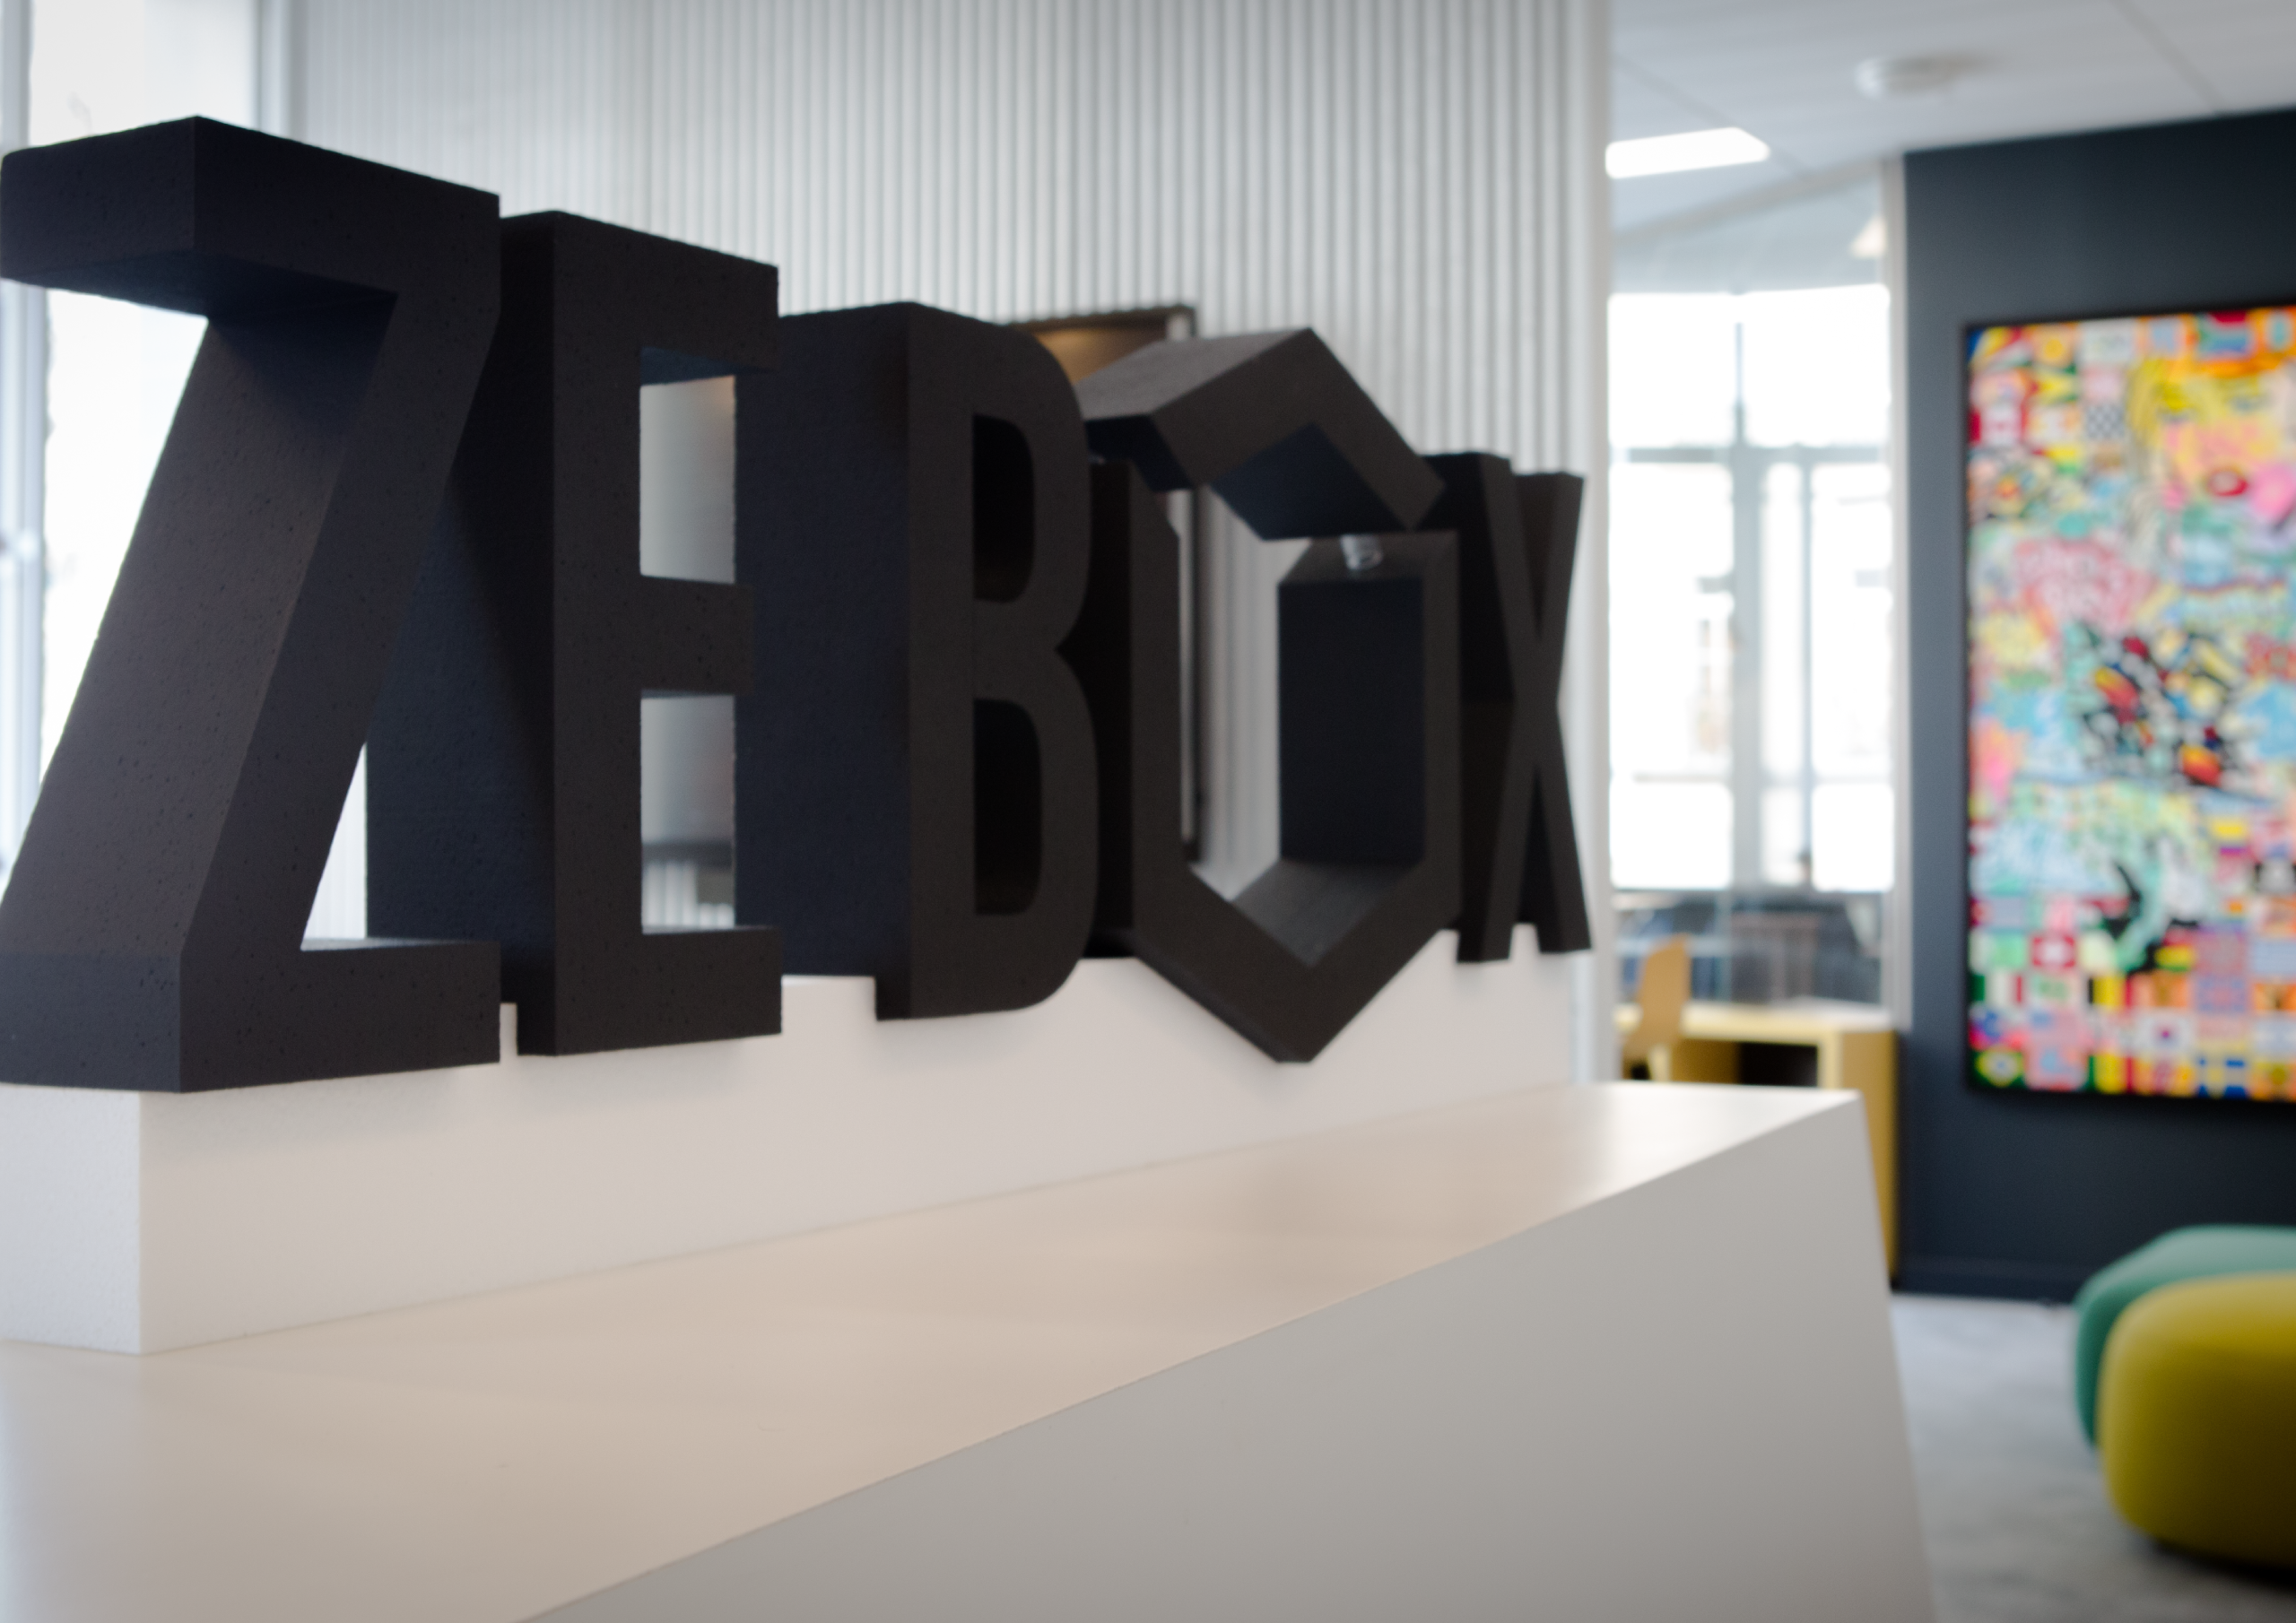     ZEBOX, un incubateur de start-ups innovantes débarque aux Antilles

